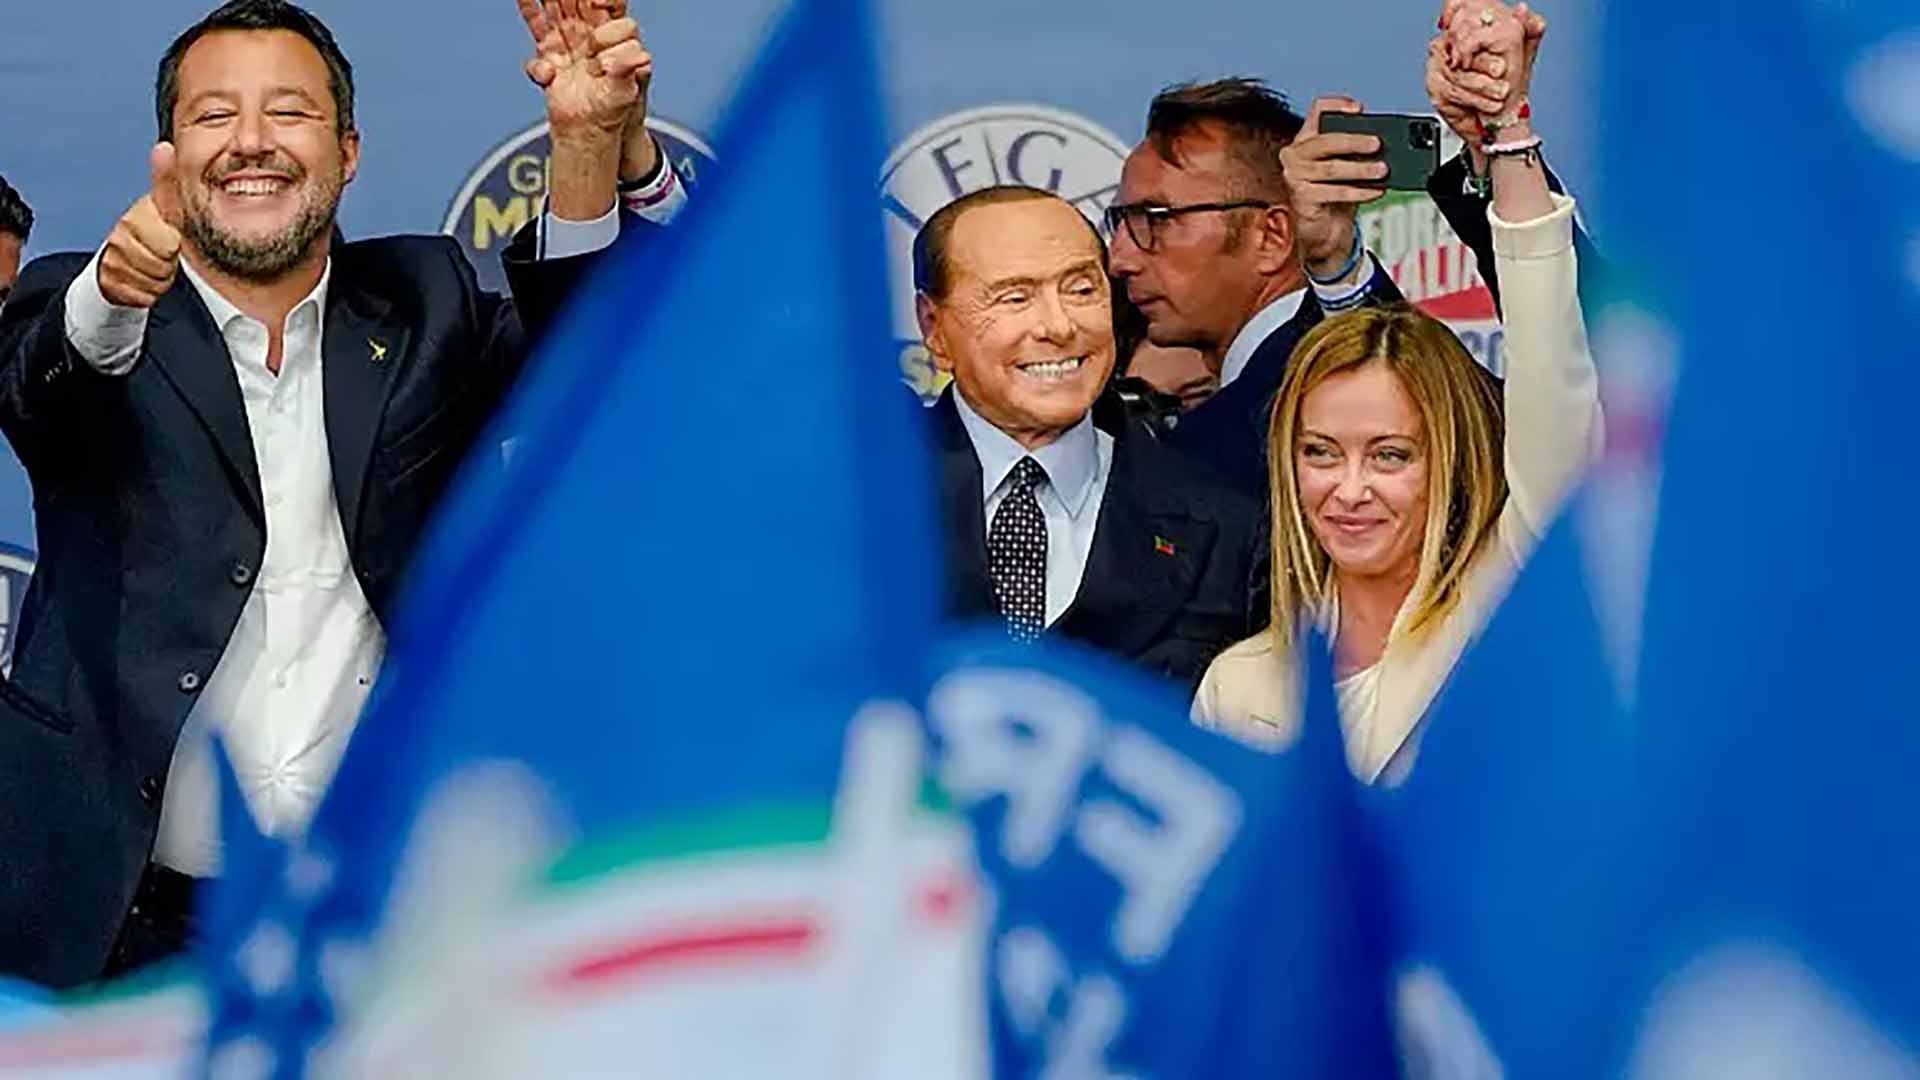 Liên minh cánh hữu giành chiến thắng trong cuộc tổng tuyển cử ở Italy. (Nguồn: AP)